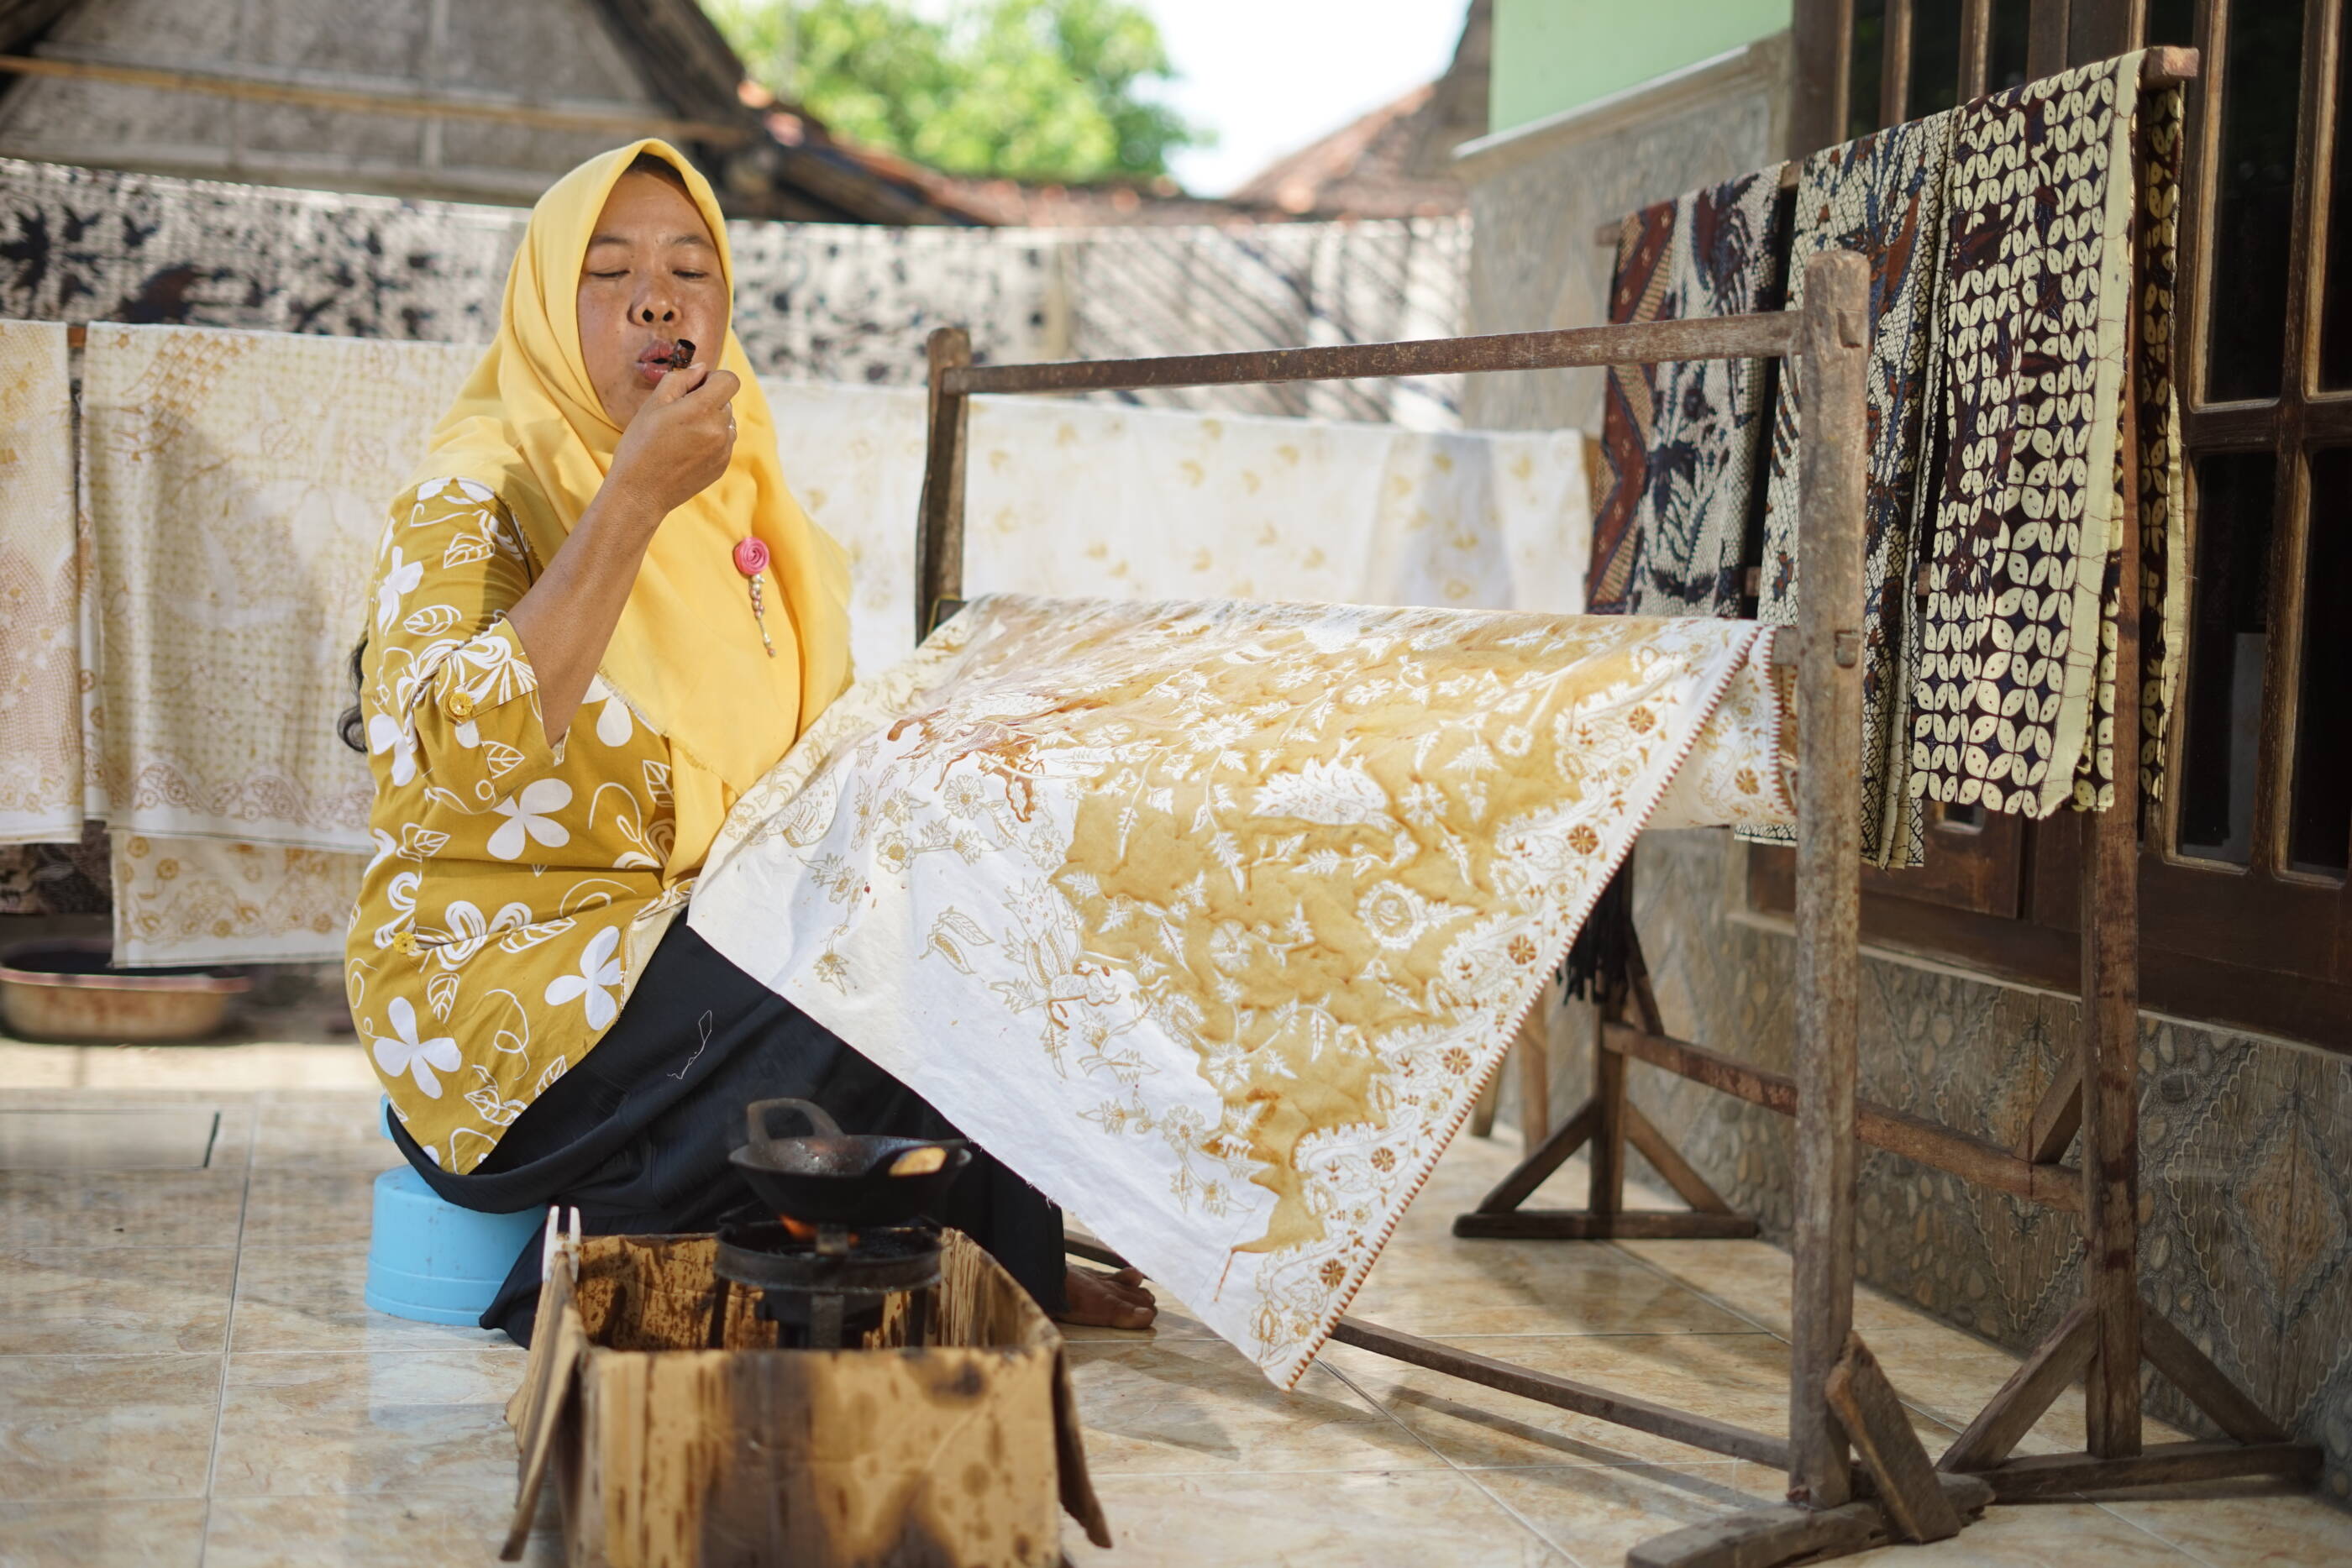 Melalui program batik pewarnaan alami, Koestini kini mampu mengembangkan dirinya sebagai seorang seniman batik menjadi pemimpin kelompok seniman batik yang aktif mempromosikan citra Batik Tuban.